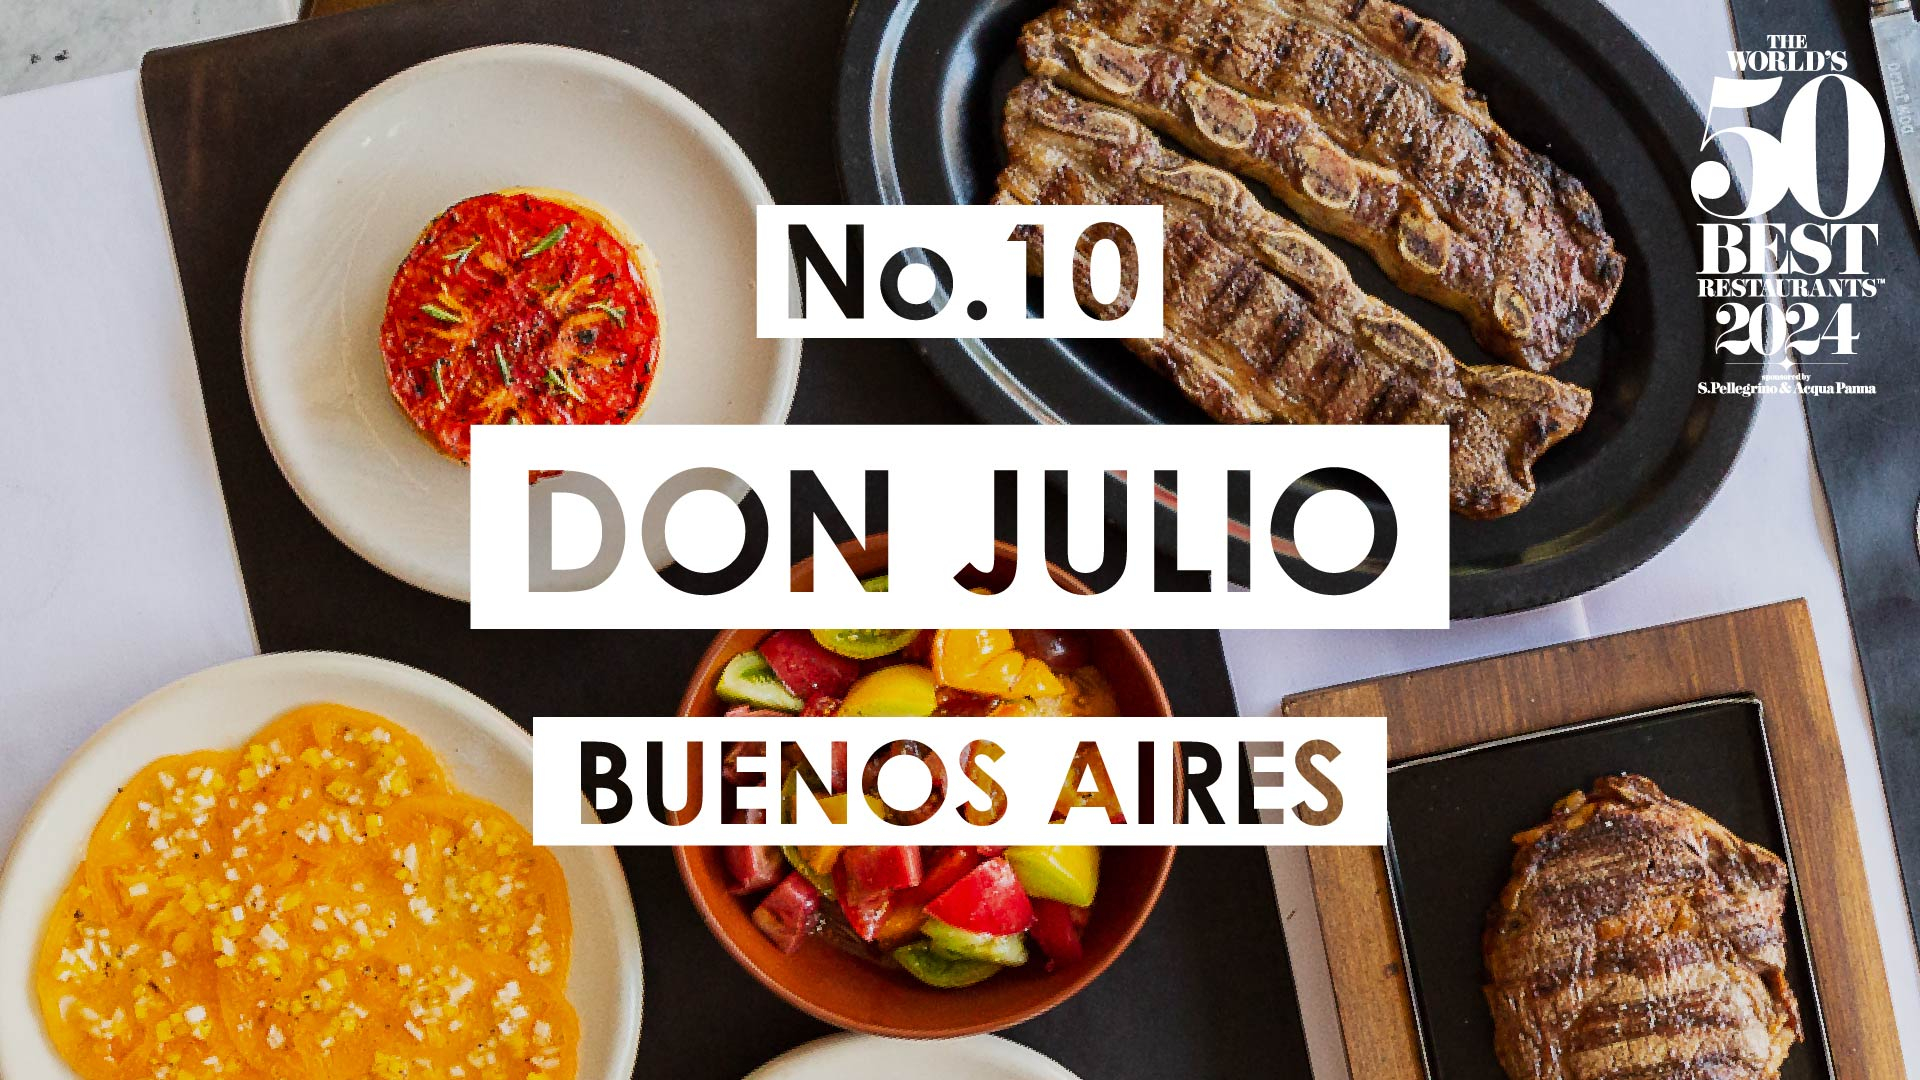 El restaurante Don Julio tiene el puesto 10 de los 50 lugares que mejor cocinan en el mundo. Foto: X